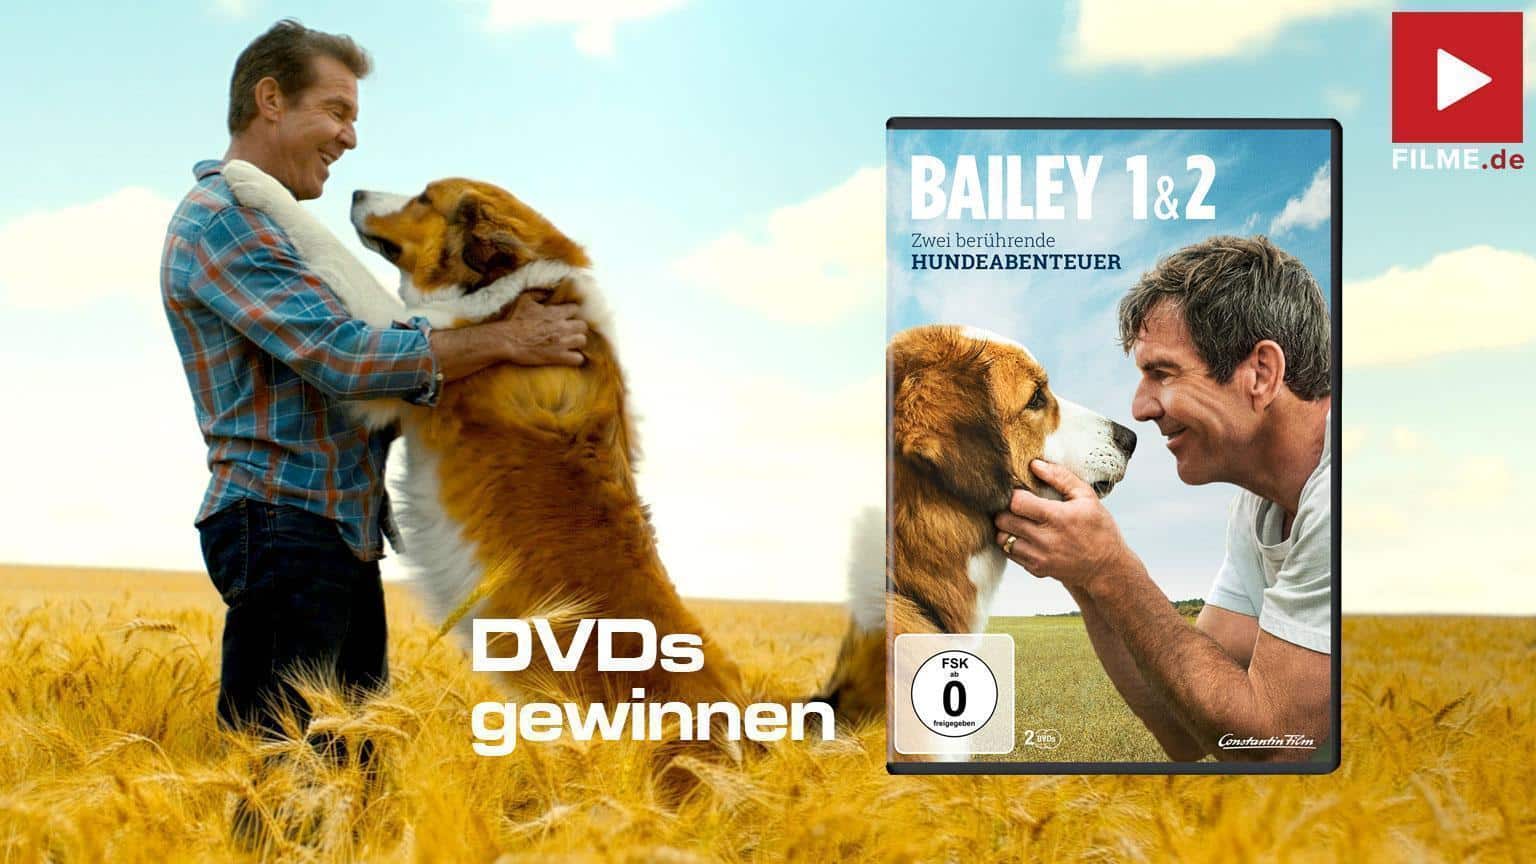 Bailey 1 & 2 Doppelpack Film 2021 DVD Gewinnspiel gewinnen shop kaufen Artikelbild